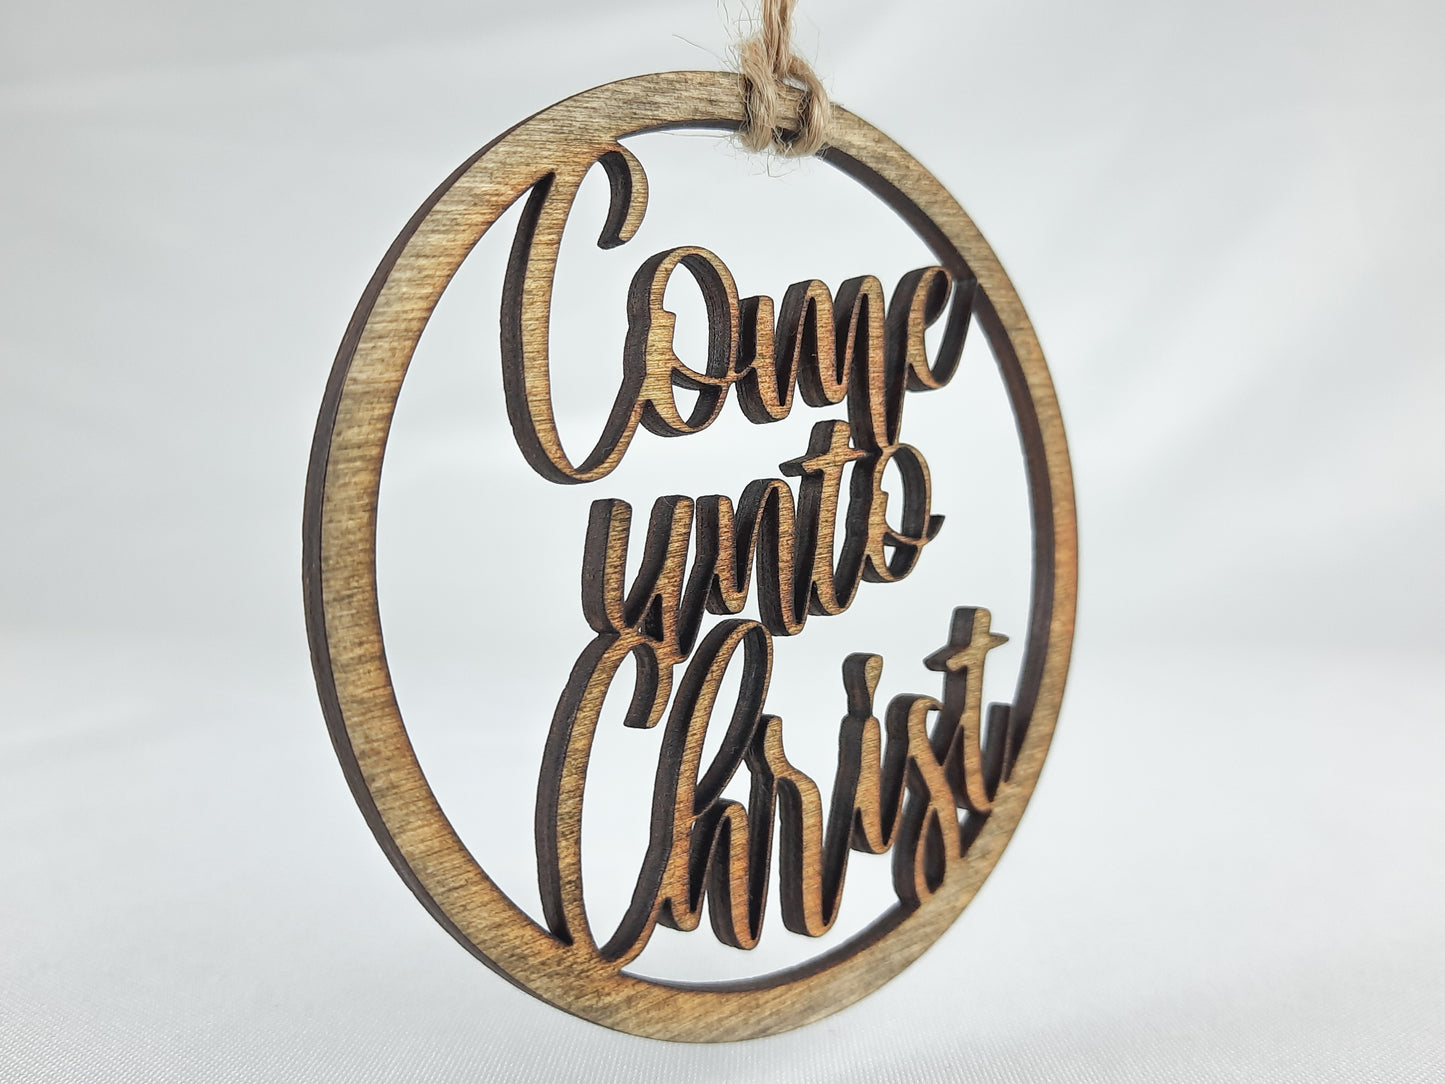 "Come Unto Christ" Ornament